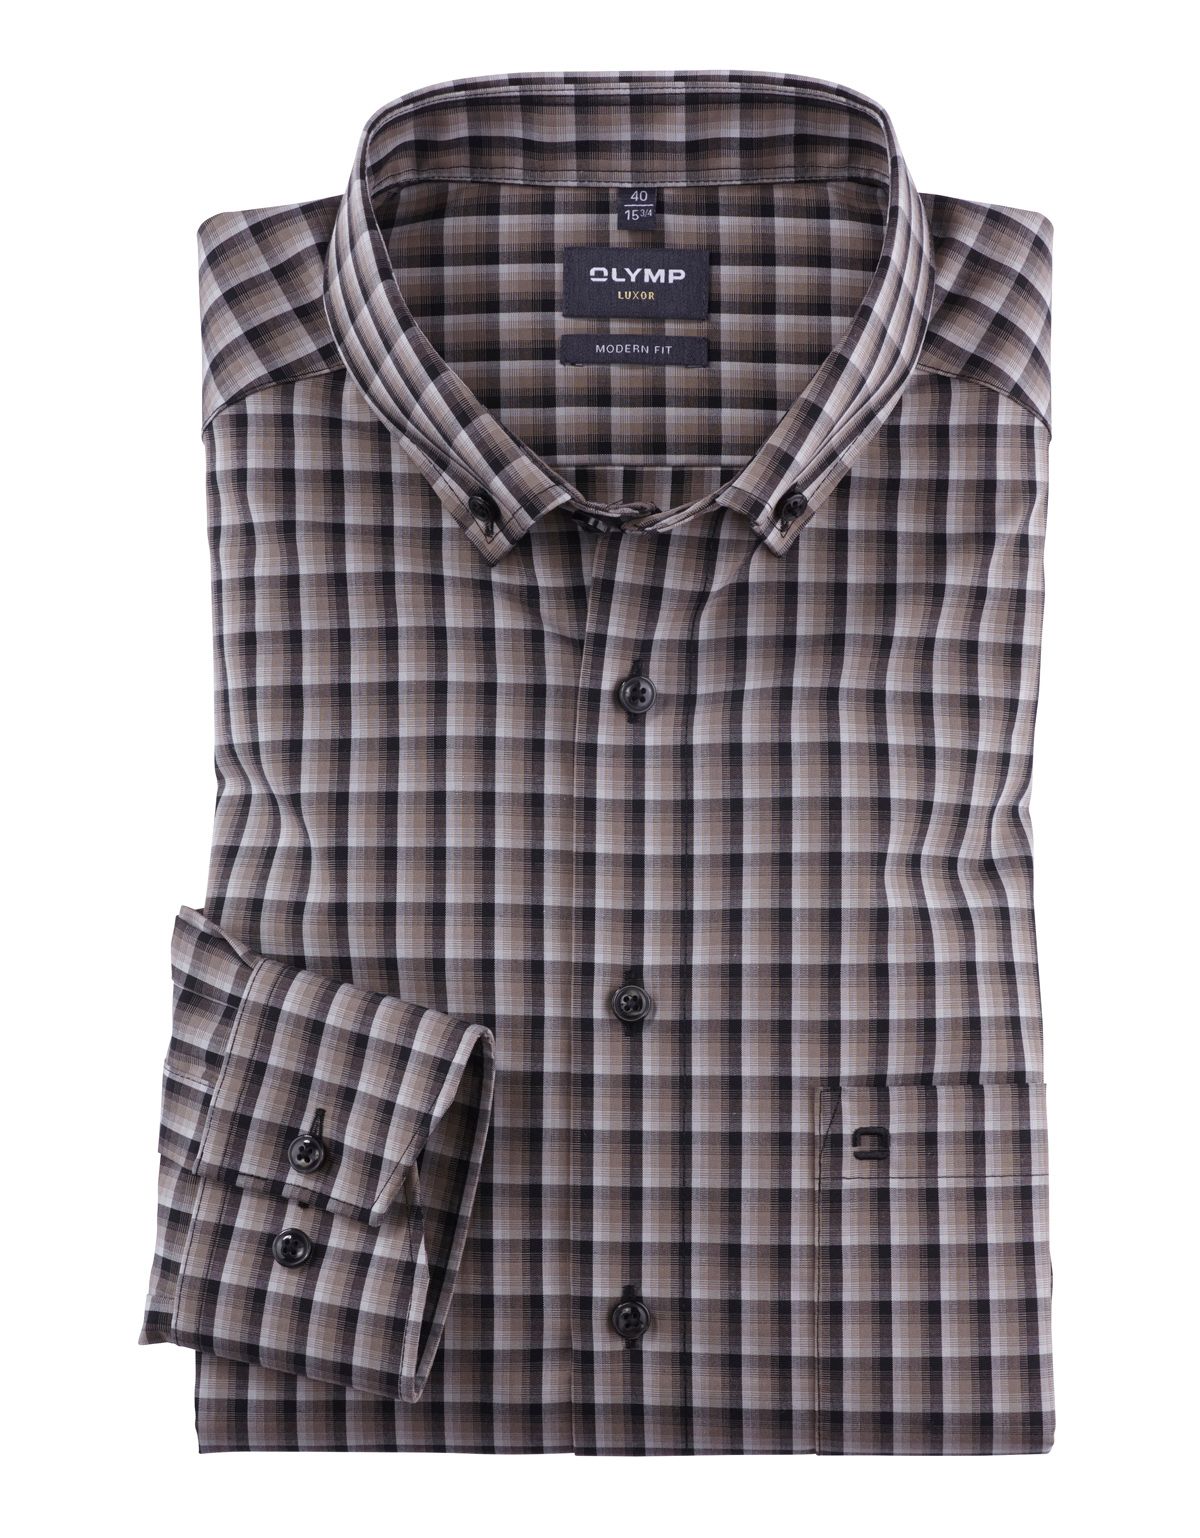 Рубашка мужская в клетку OLYMP Luxor, modern fit, пуговицы на воротнике